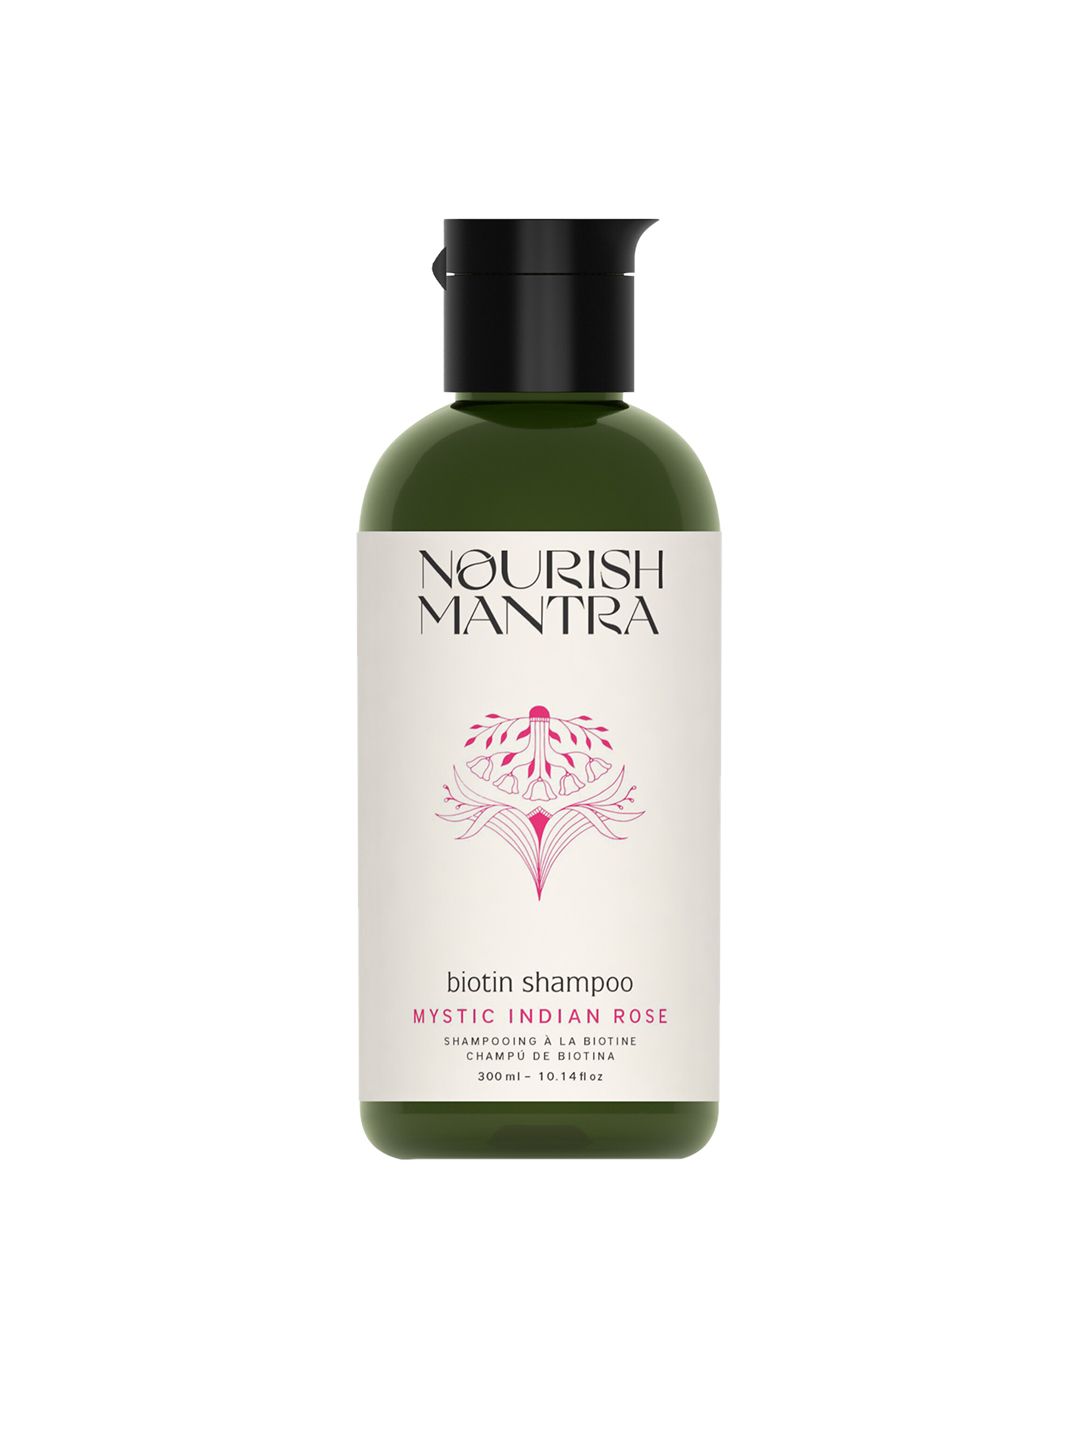 Nourish Mantra Mystic Indian Rose Geranium Oil Biotin Shampoo - 300 ml Price in India